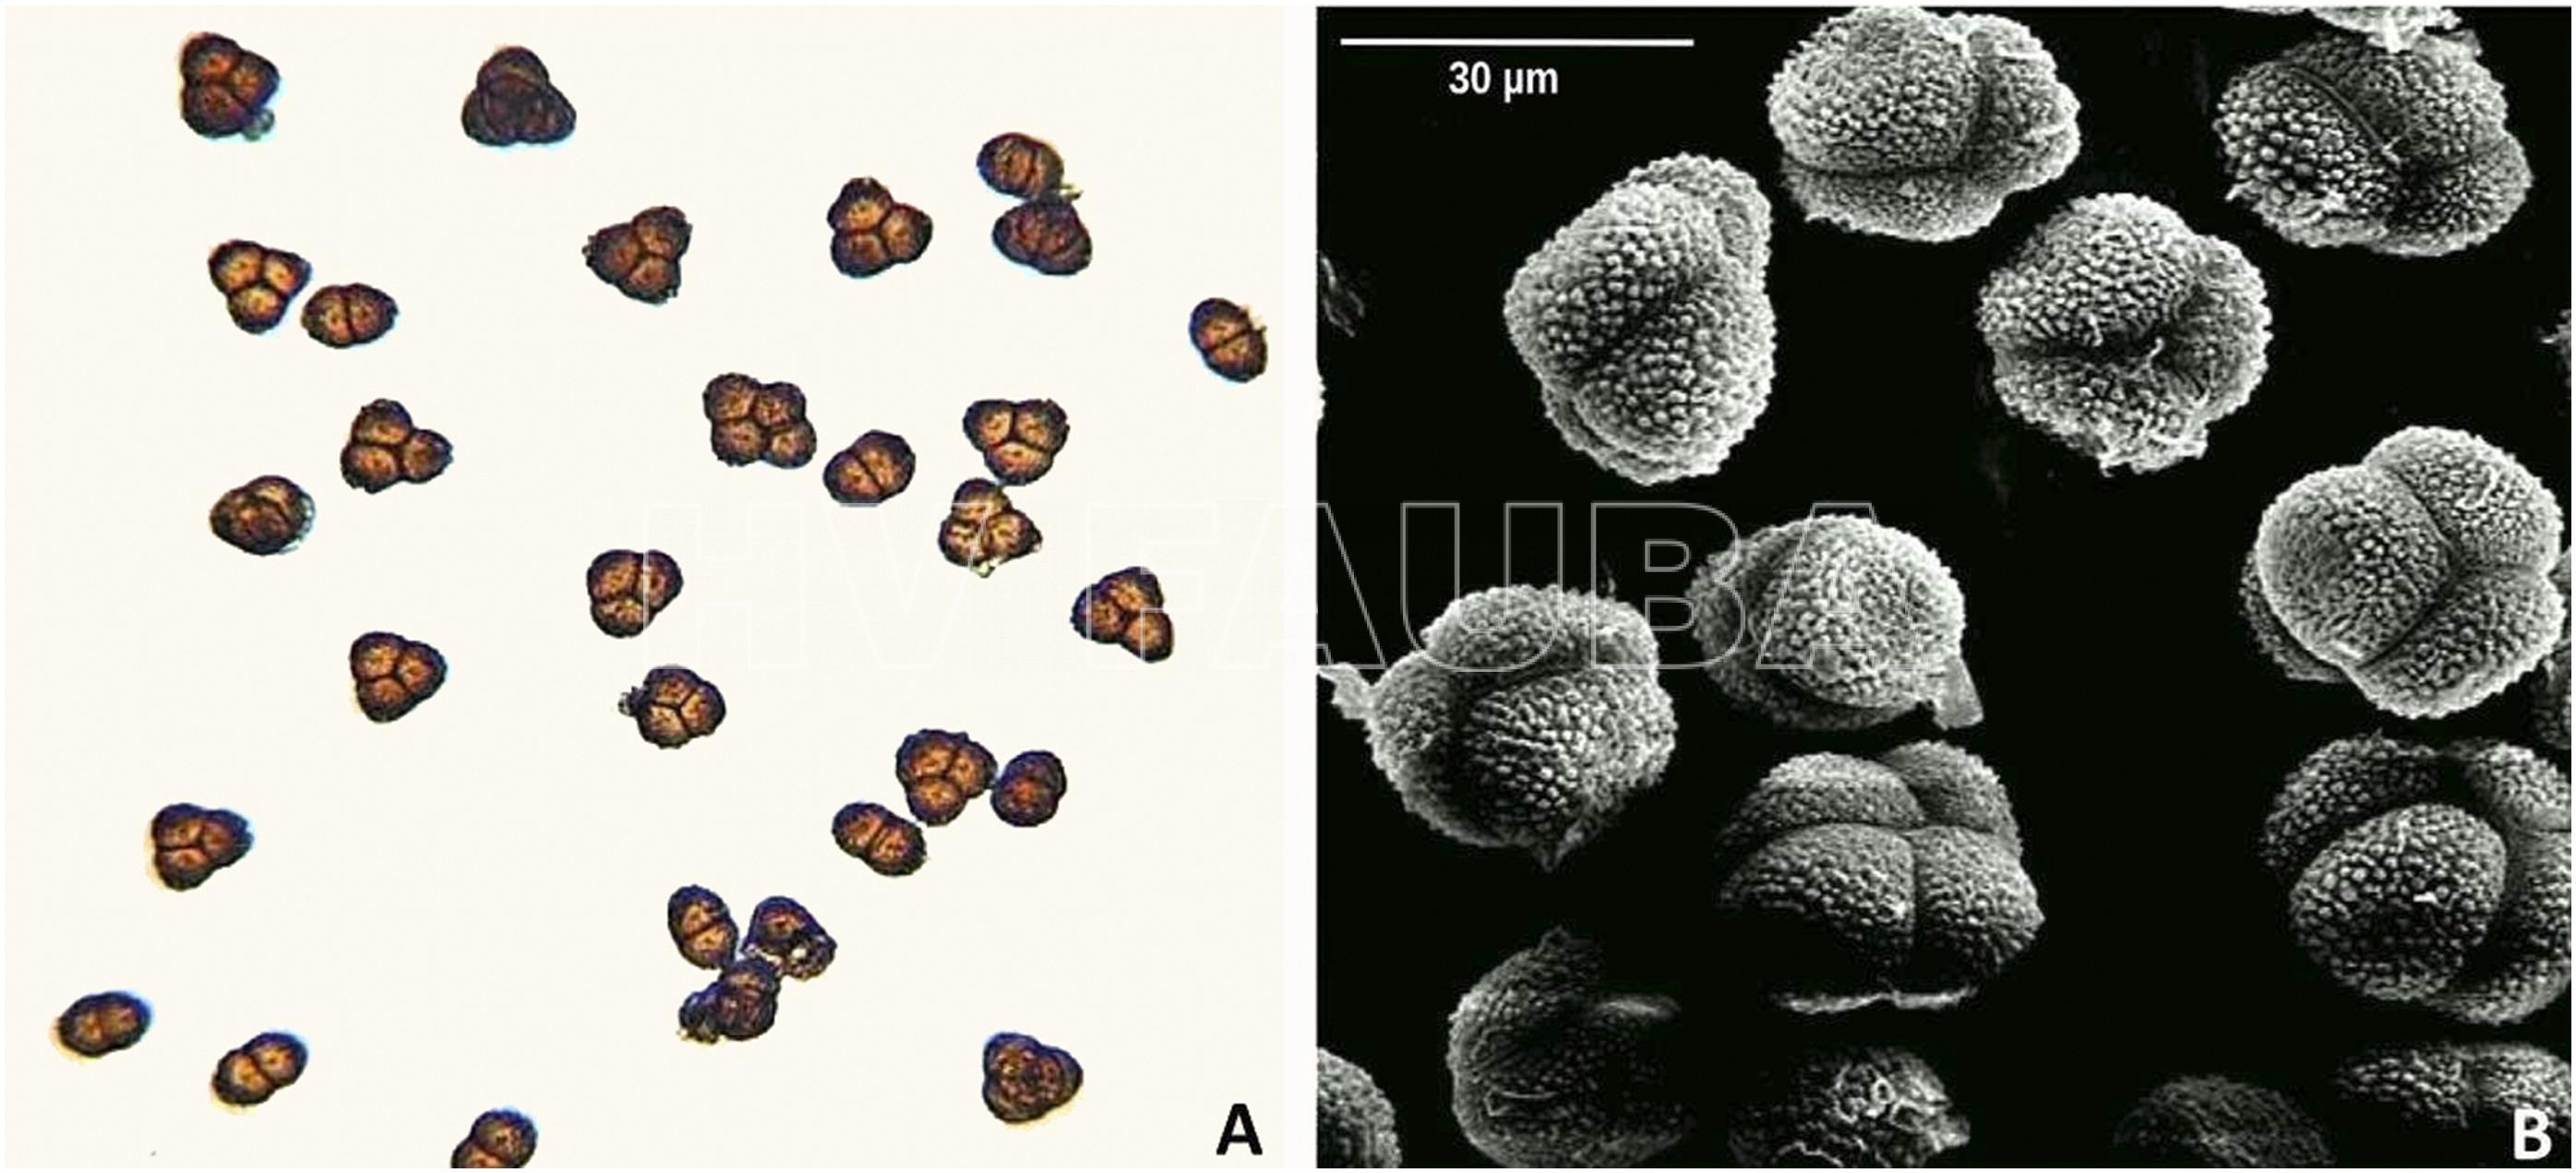 Teliosporas de Thecaphora frezii. A, Teliosporas observadas al microscopio óptico a 10×. B, Micrografías electrónicas de barrido de teliosporas multicelulares. Autores: Rago et al., 2017.